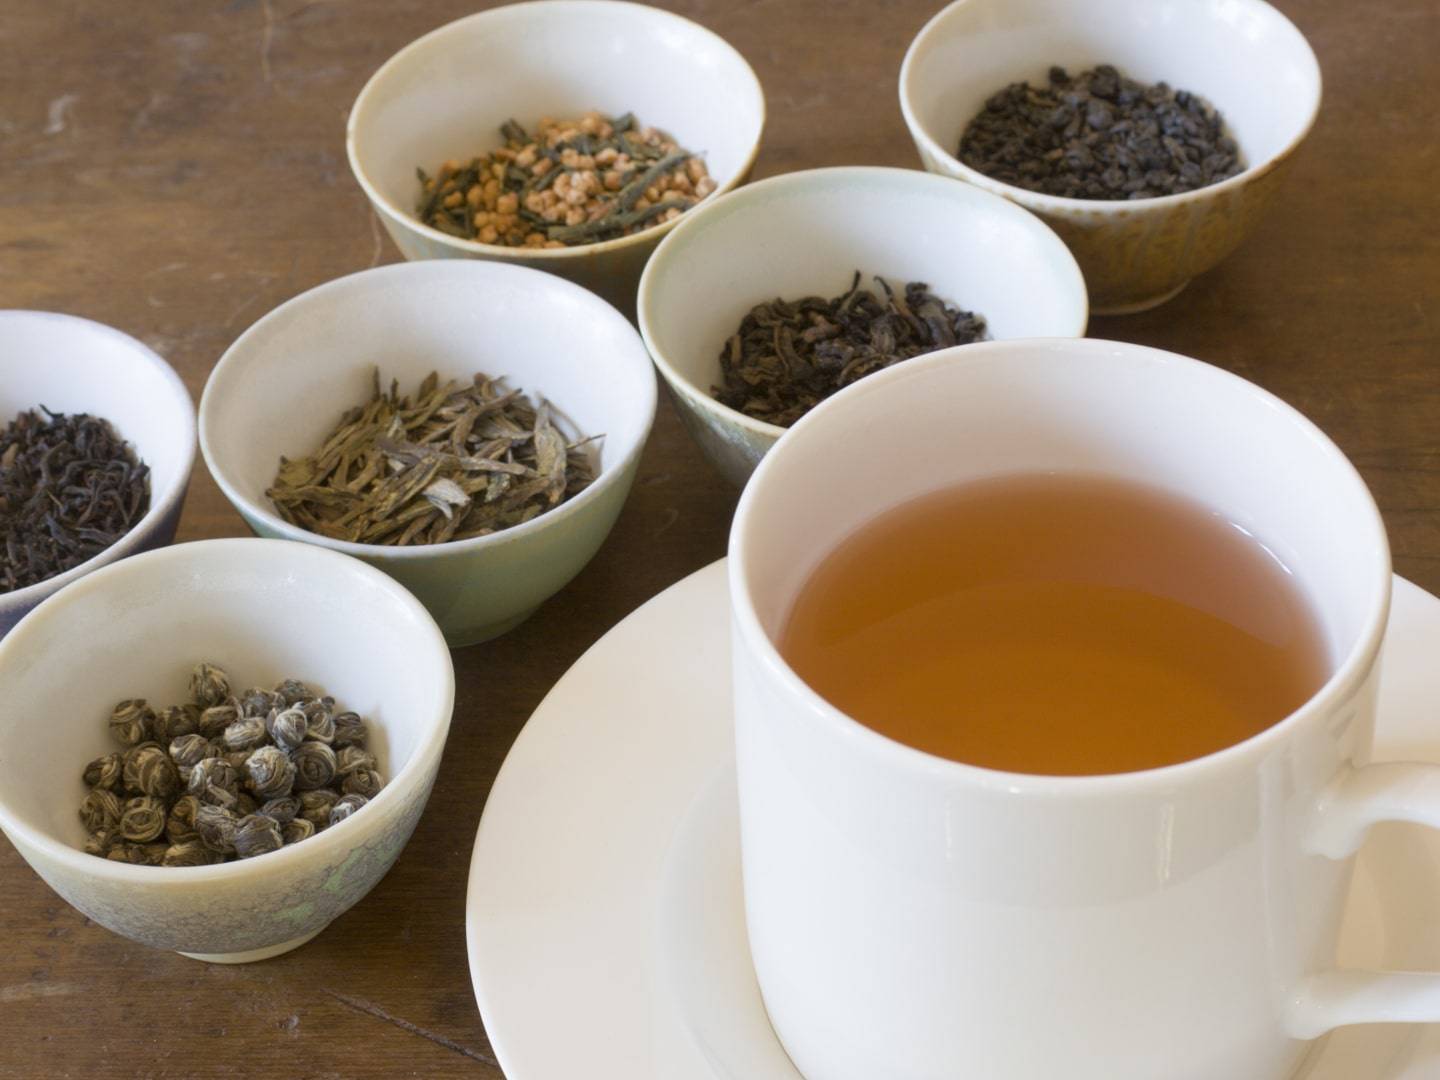 Экспертиза определила самый вкусный чай в пакетиках